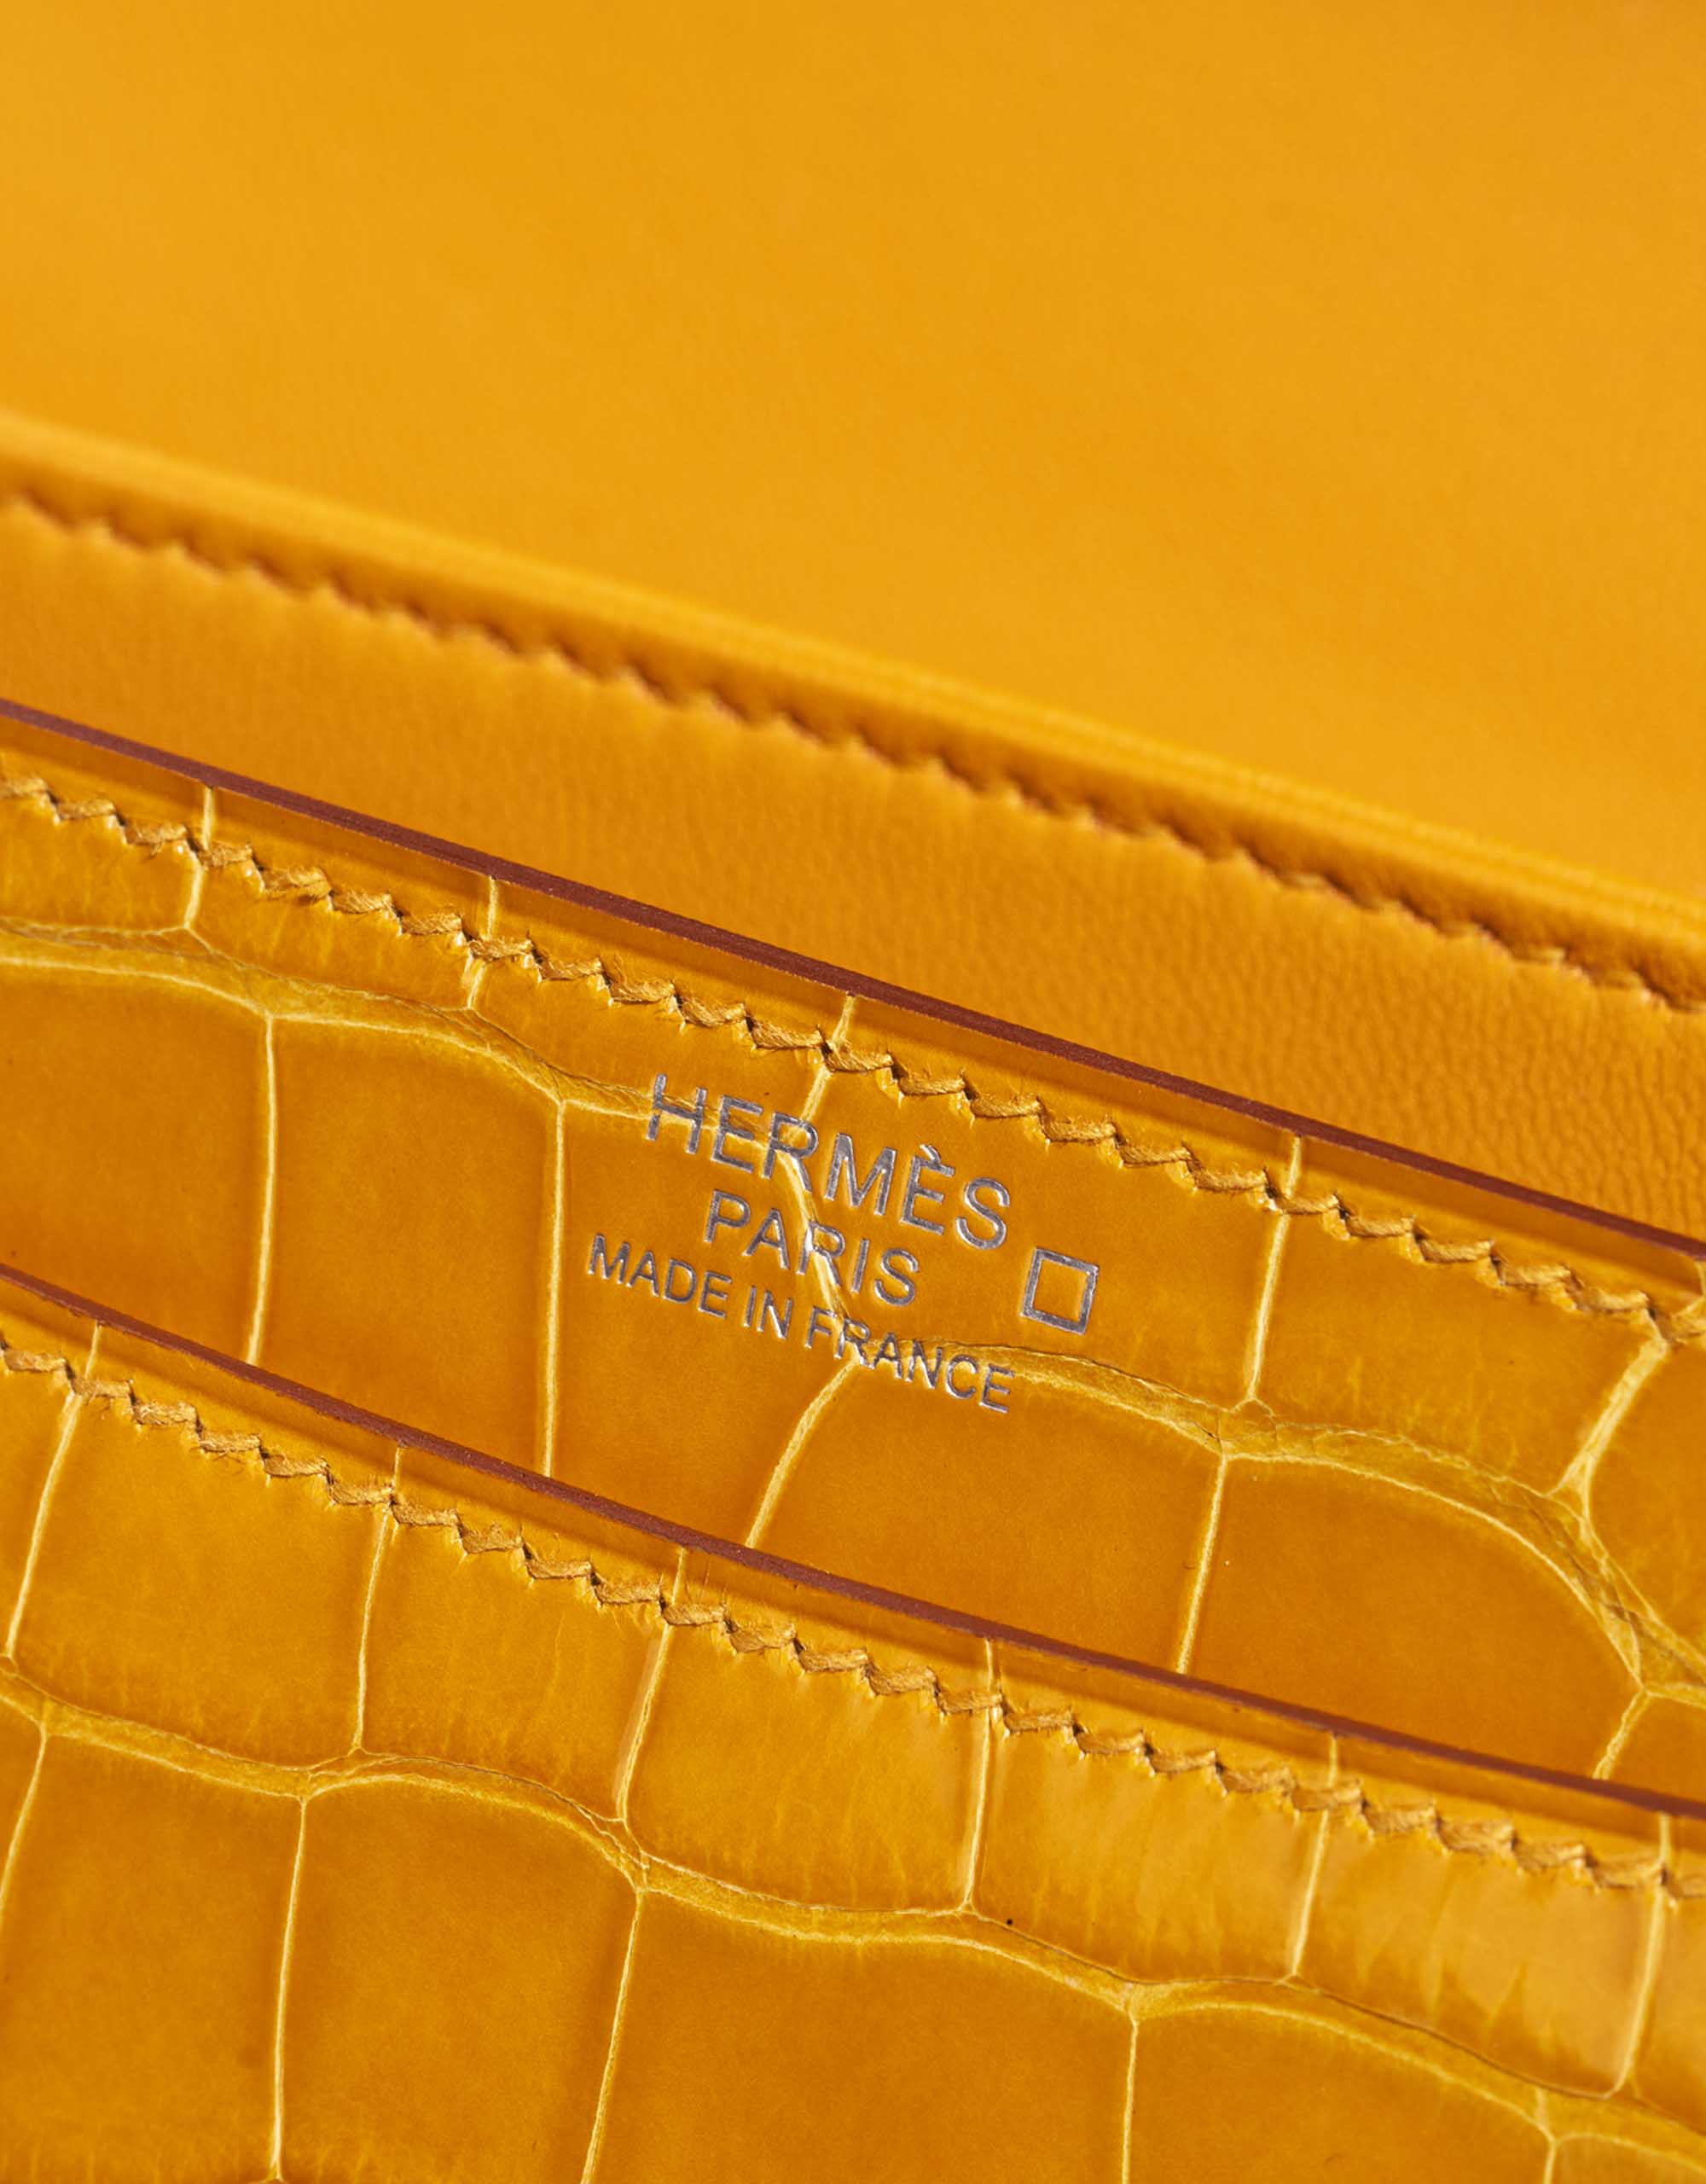 Gebrauchte Hermès Tasche 2002 Alligator Jaune Ambre Yellow Logo | Verkaufen Sie Ihre Designer-Tasche auf Saclab.com